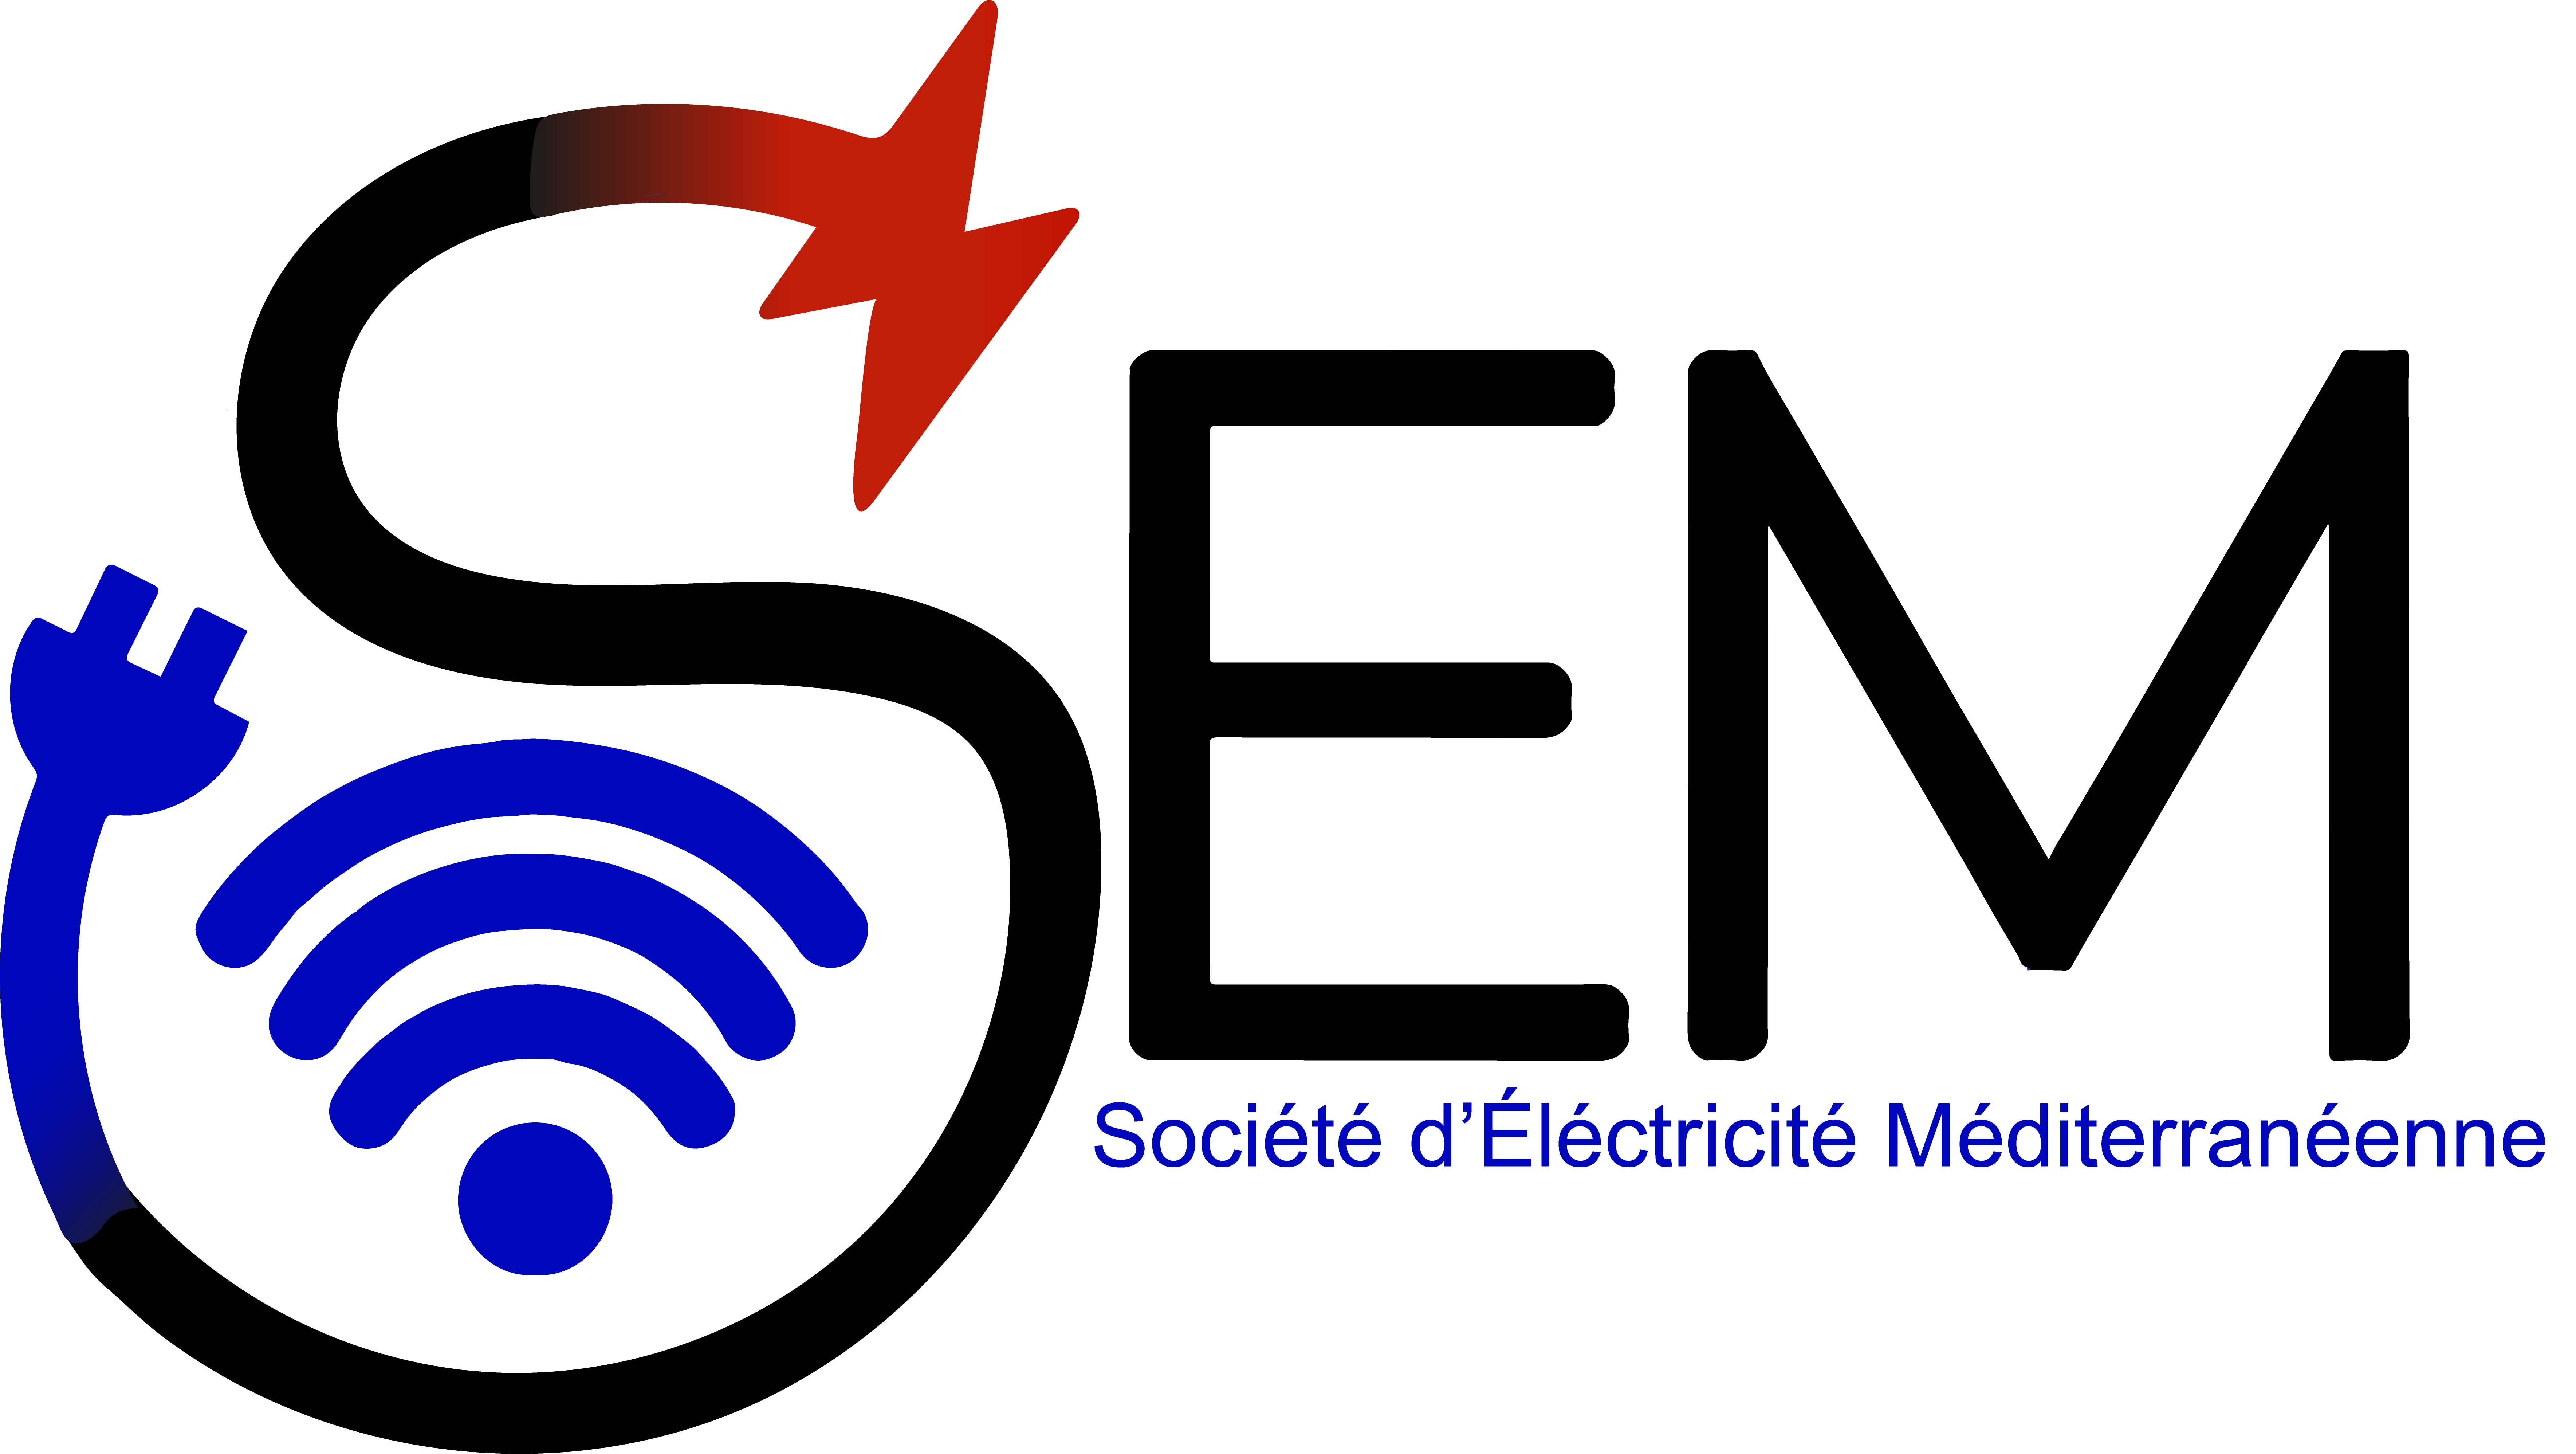 Société d'Electricité Méditerranéenne